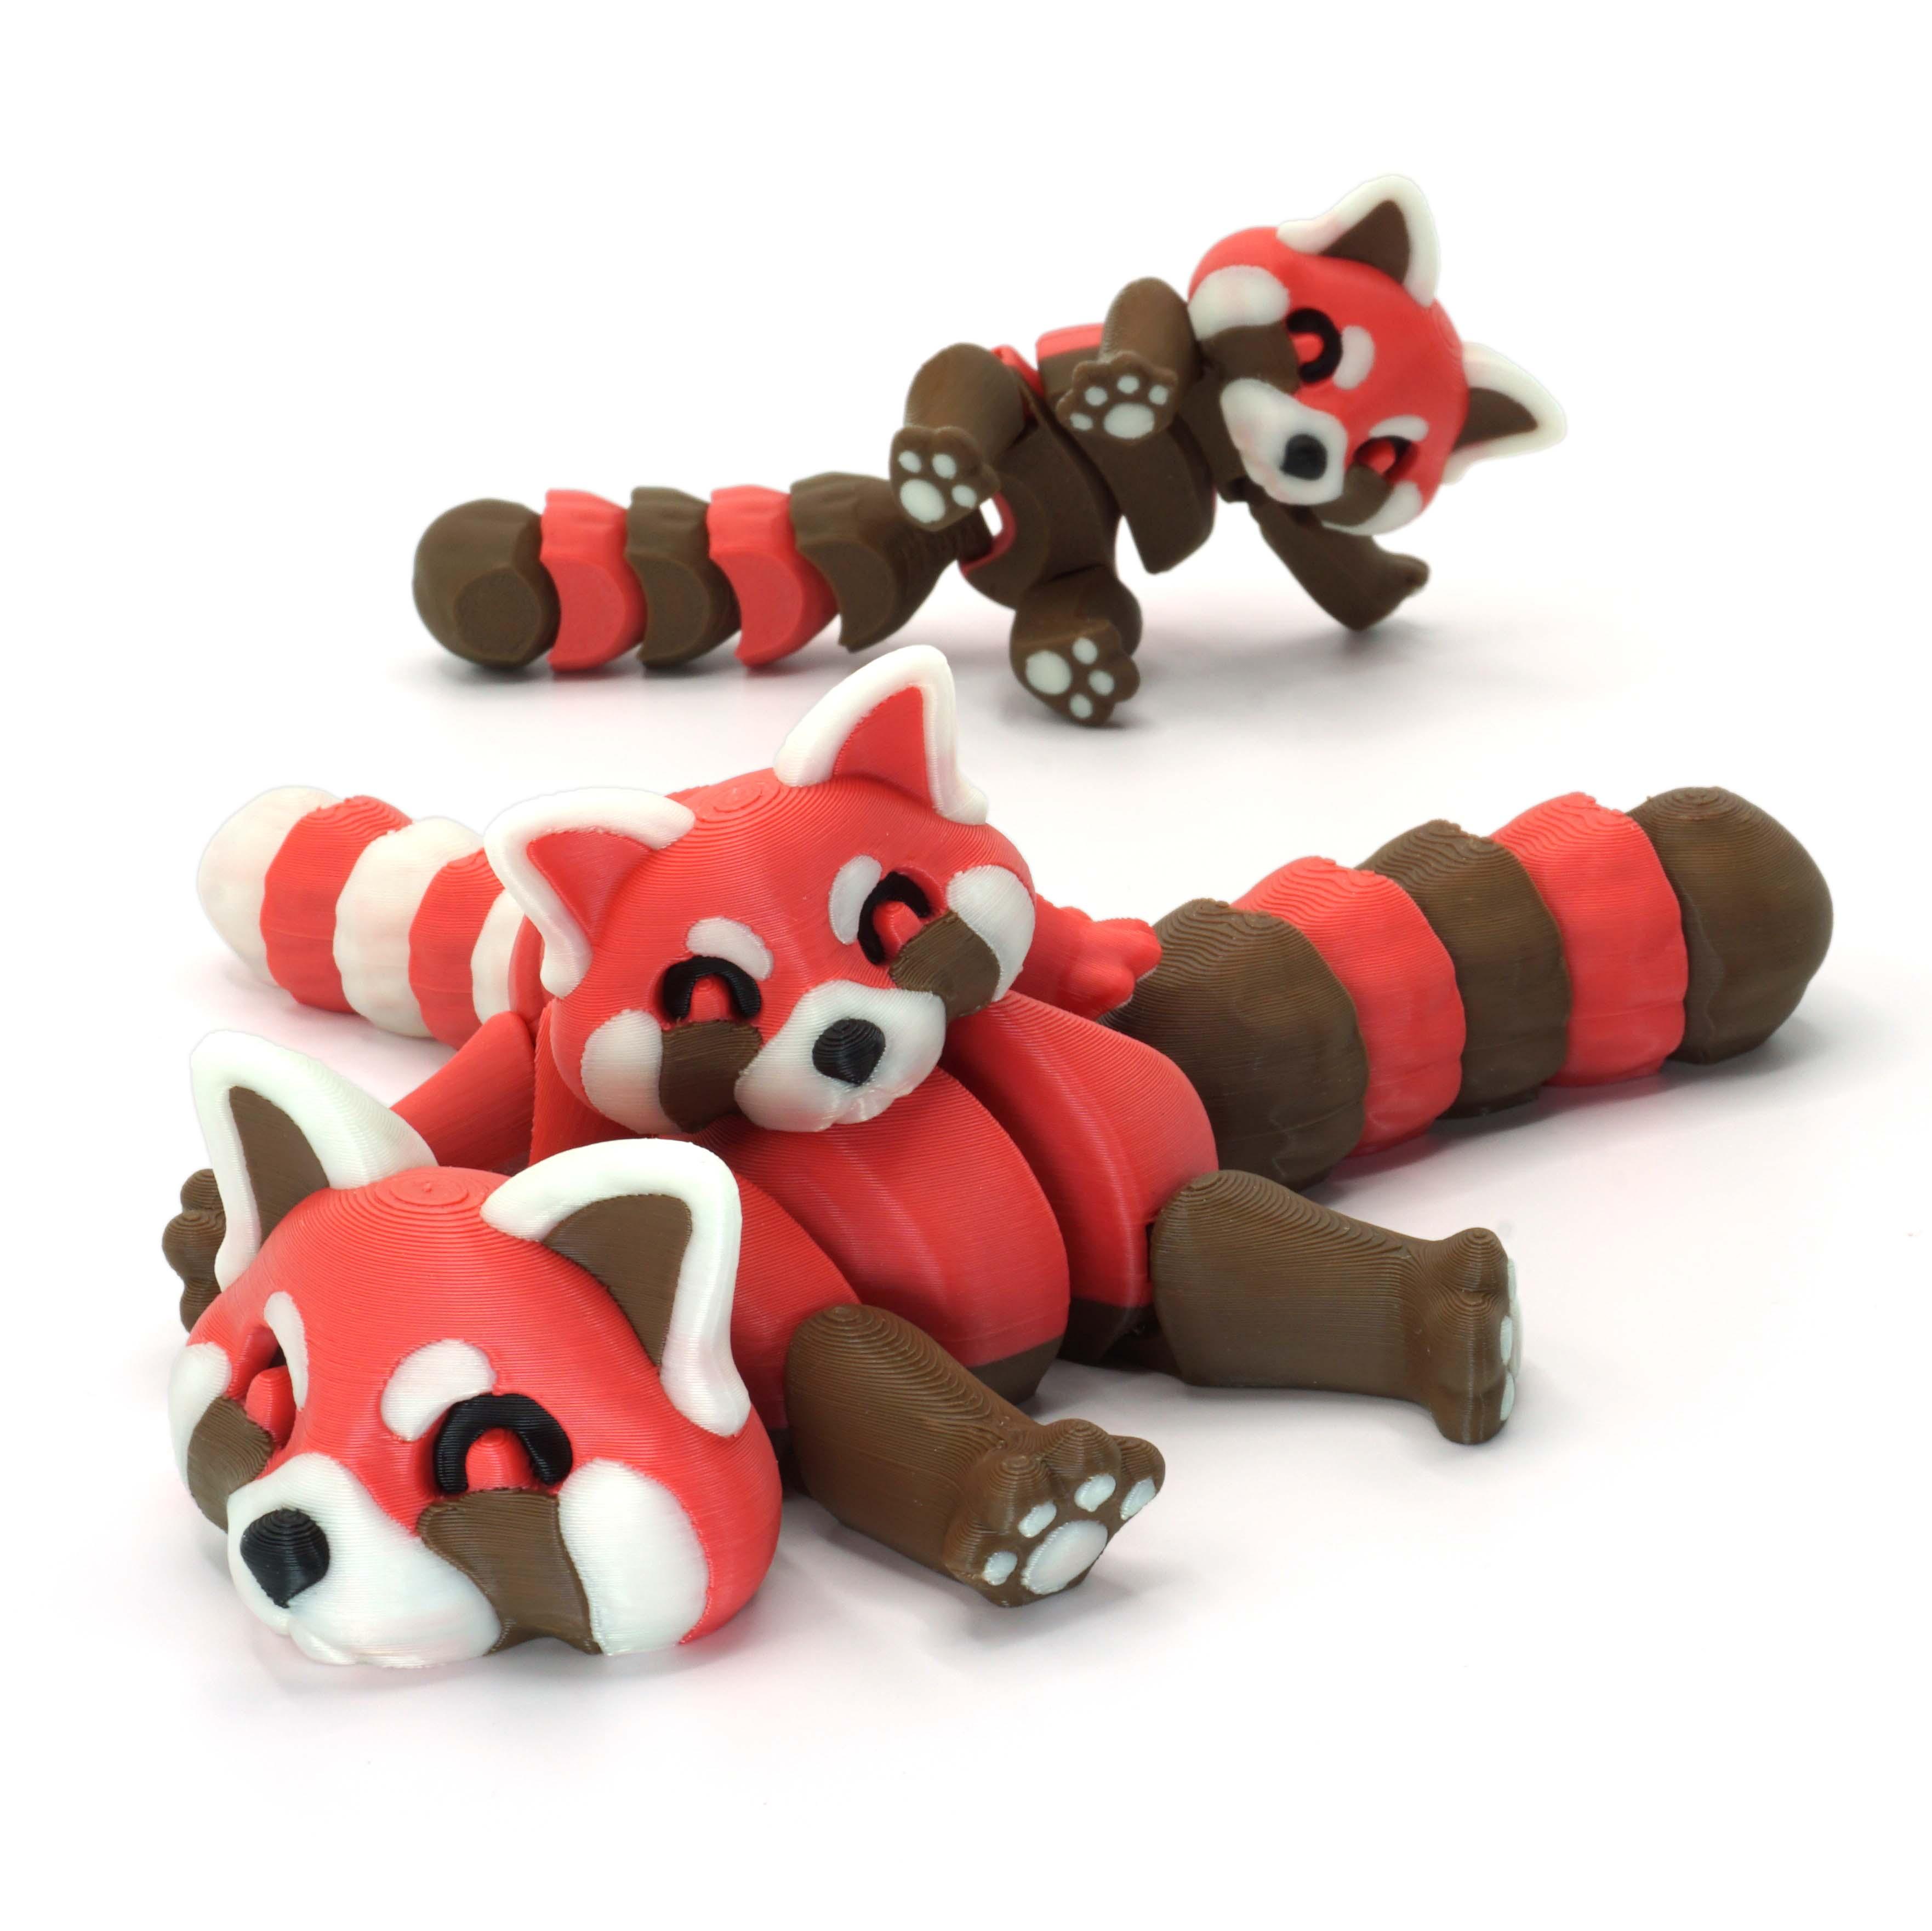 Red Panda 3d model